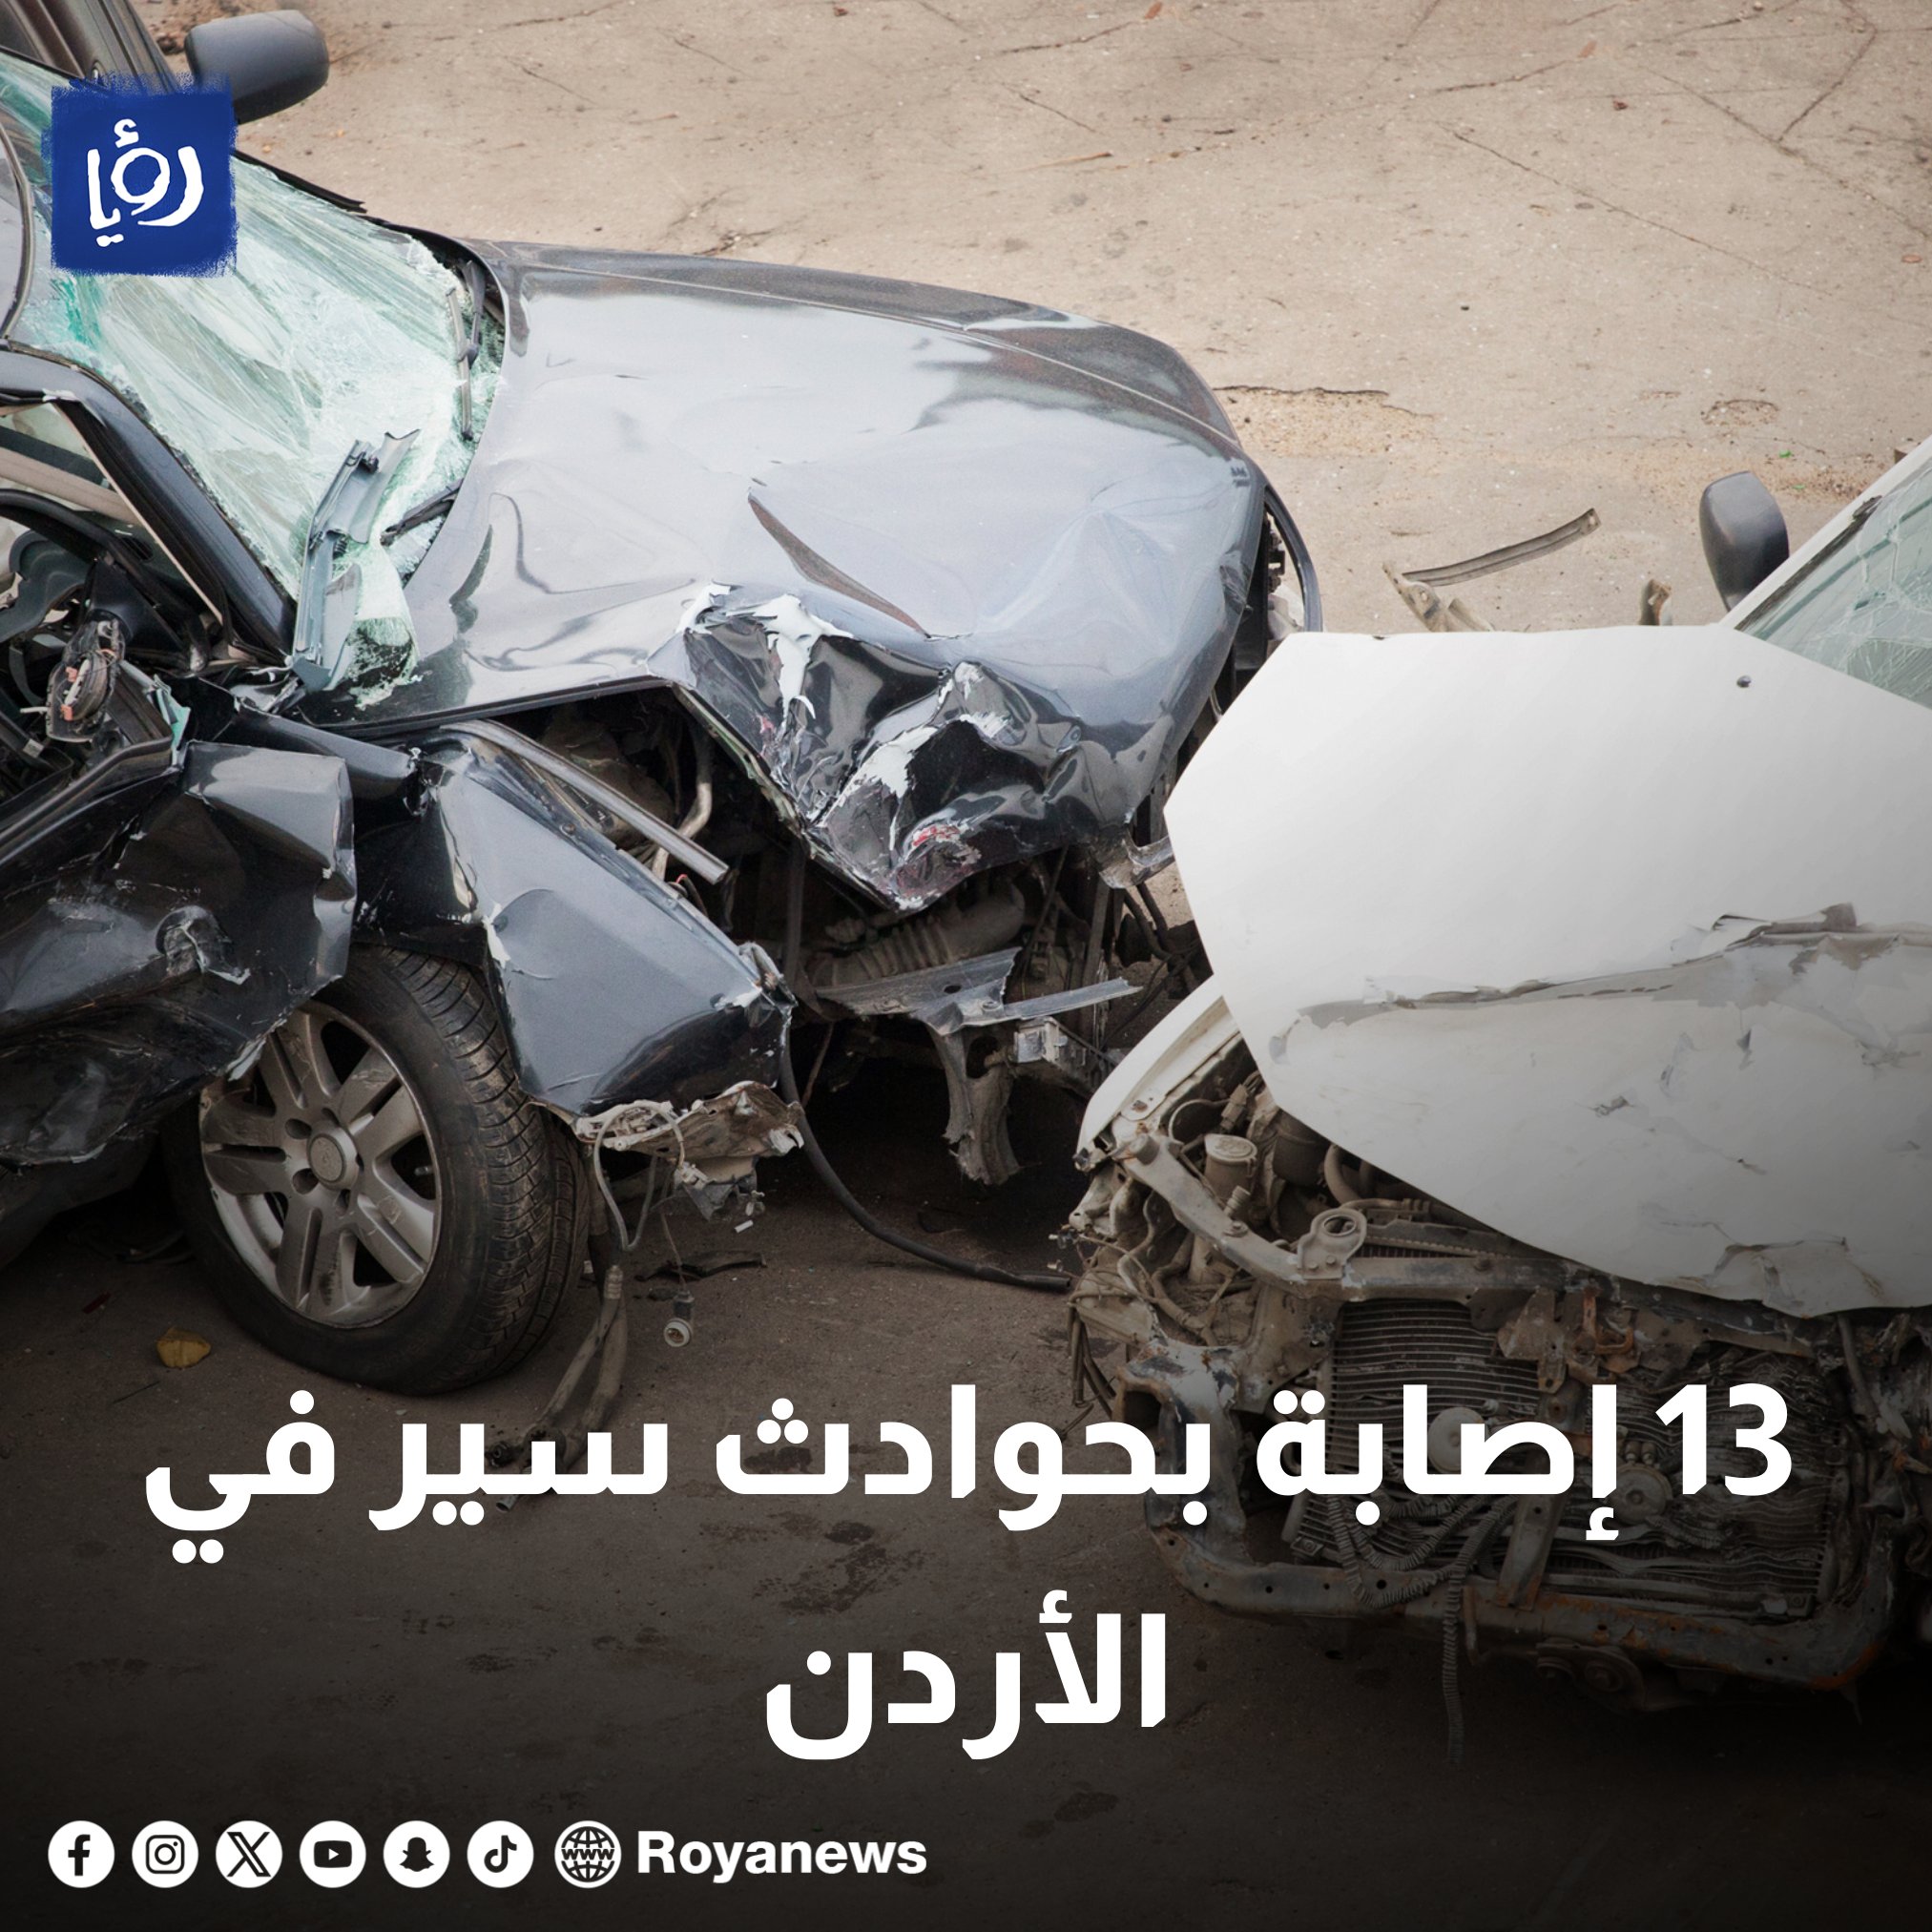 عاجل | 13 إصابة بحوادث سير في الأردن #رؤيا_الإخباري 